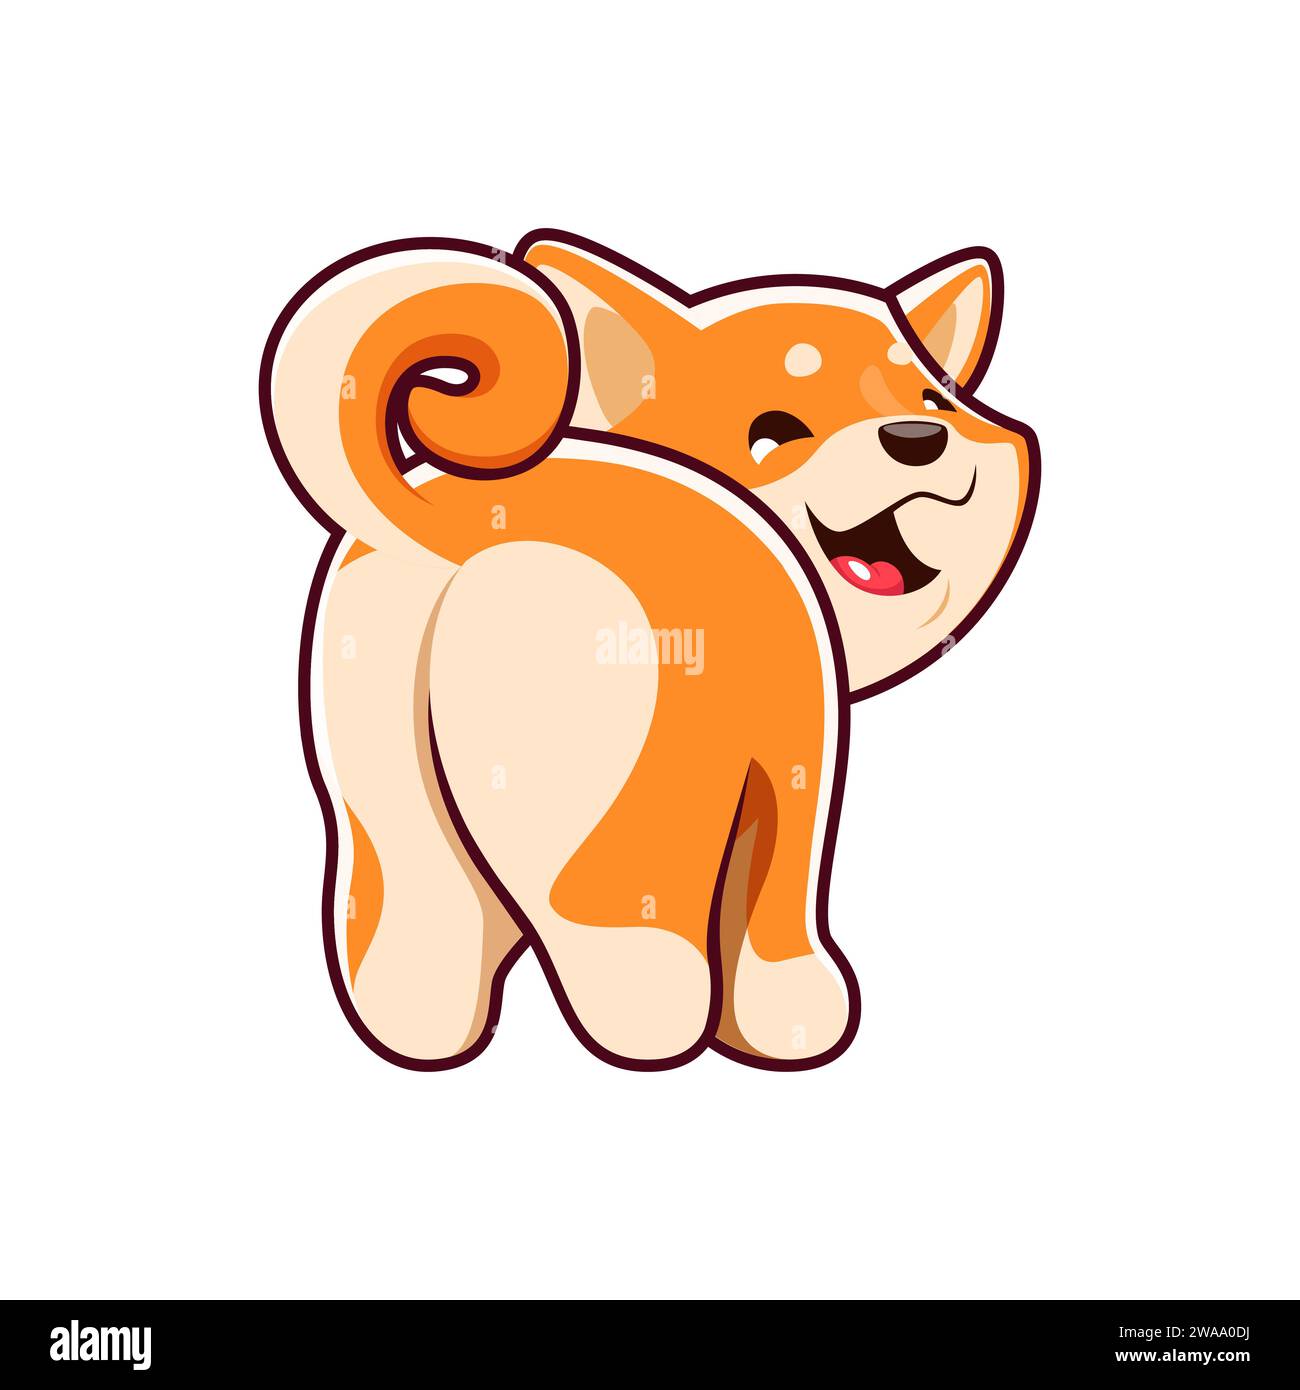 Cartoon Kawaii Shiba Inu Hund zeigt zurück, niedliches Welpen Haustier oder lustiges Tier, Vektor-Kinderfigur. Happy Shiba Inu Welpen Hund lächelt mit Schwanz hoch, Baby Maskottchen oder süße Hund Emoji Stock Vektor